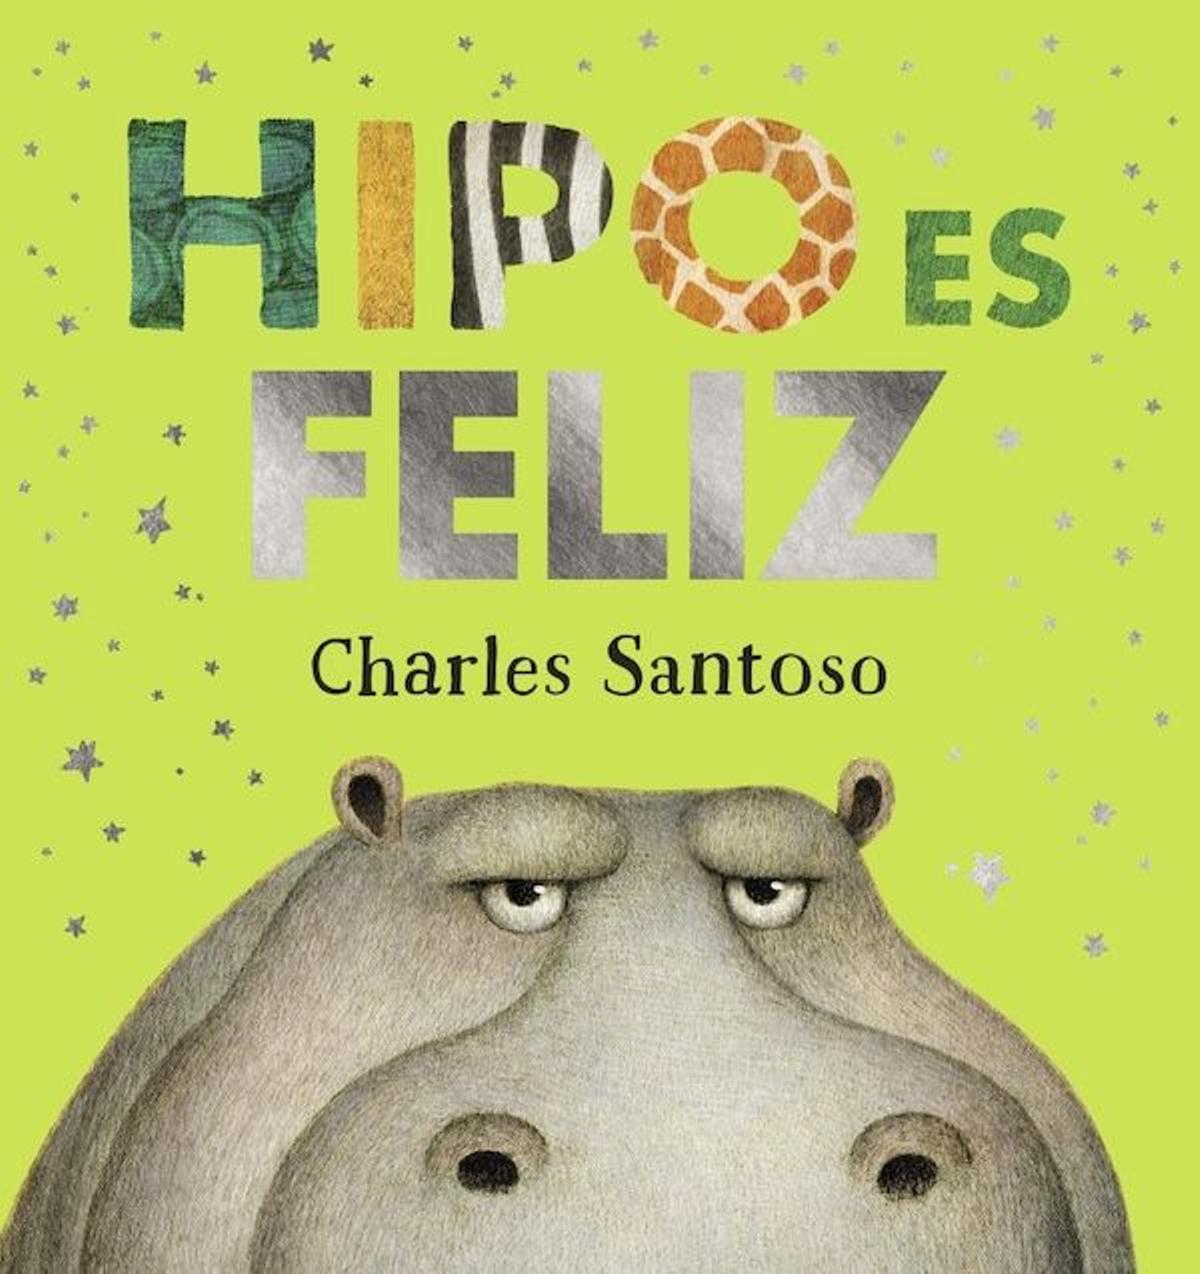 Hipo es feliz, de Charles Santoso (Anaya).